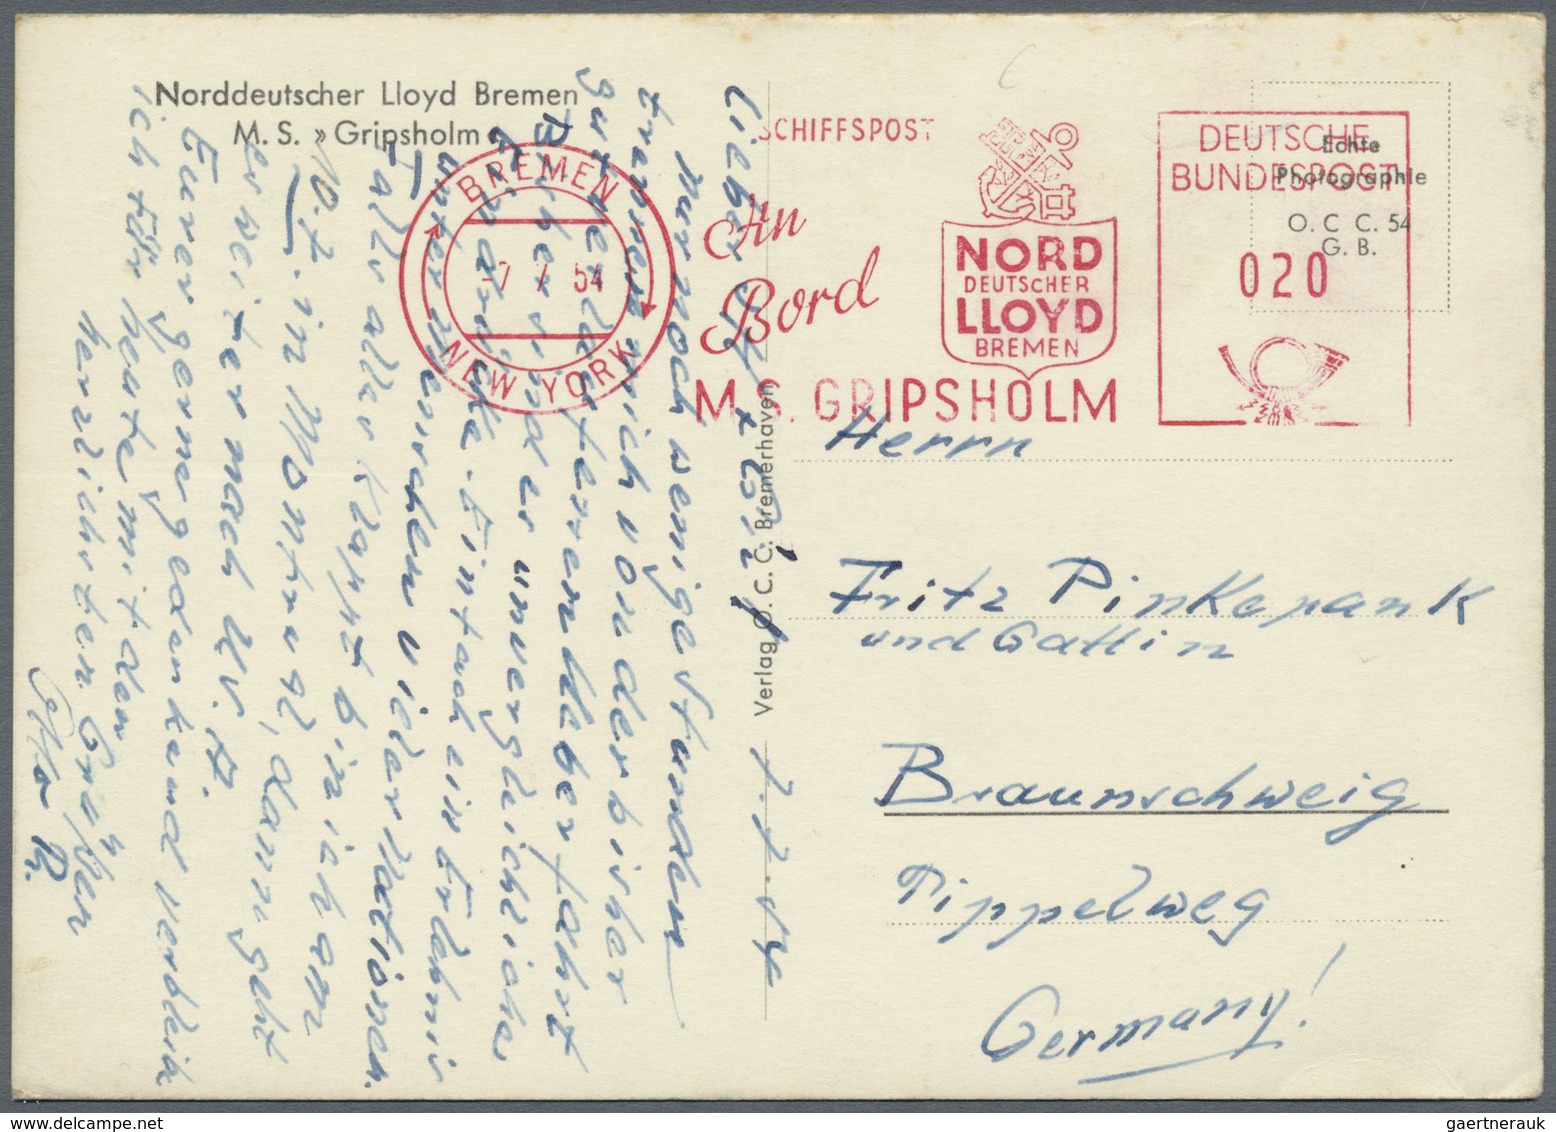 Schiffspost Deutschland: 1954: MS GRIPSHOLM Norddeutscher Lloyd Bremen -> New York, 07.07.1954, Abse - Lettres & Documents